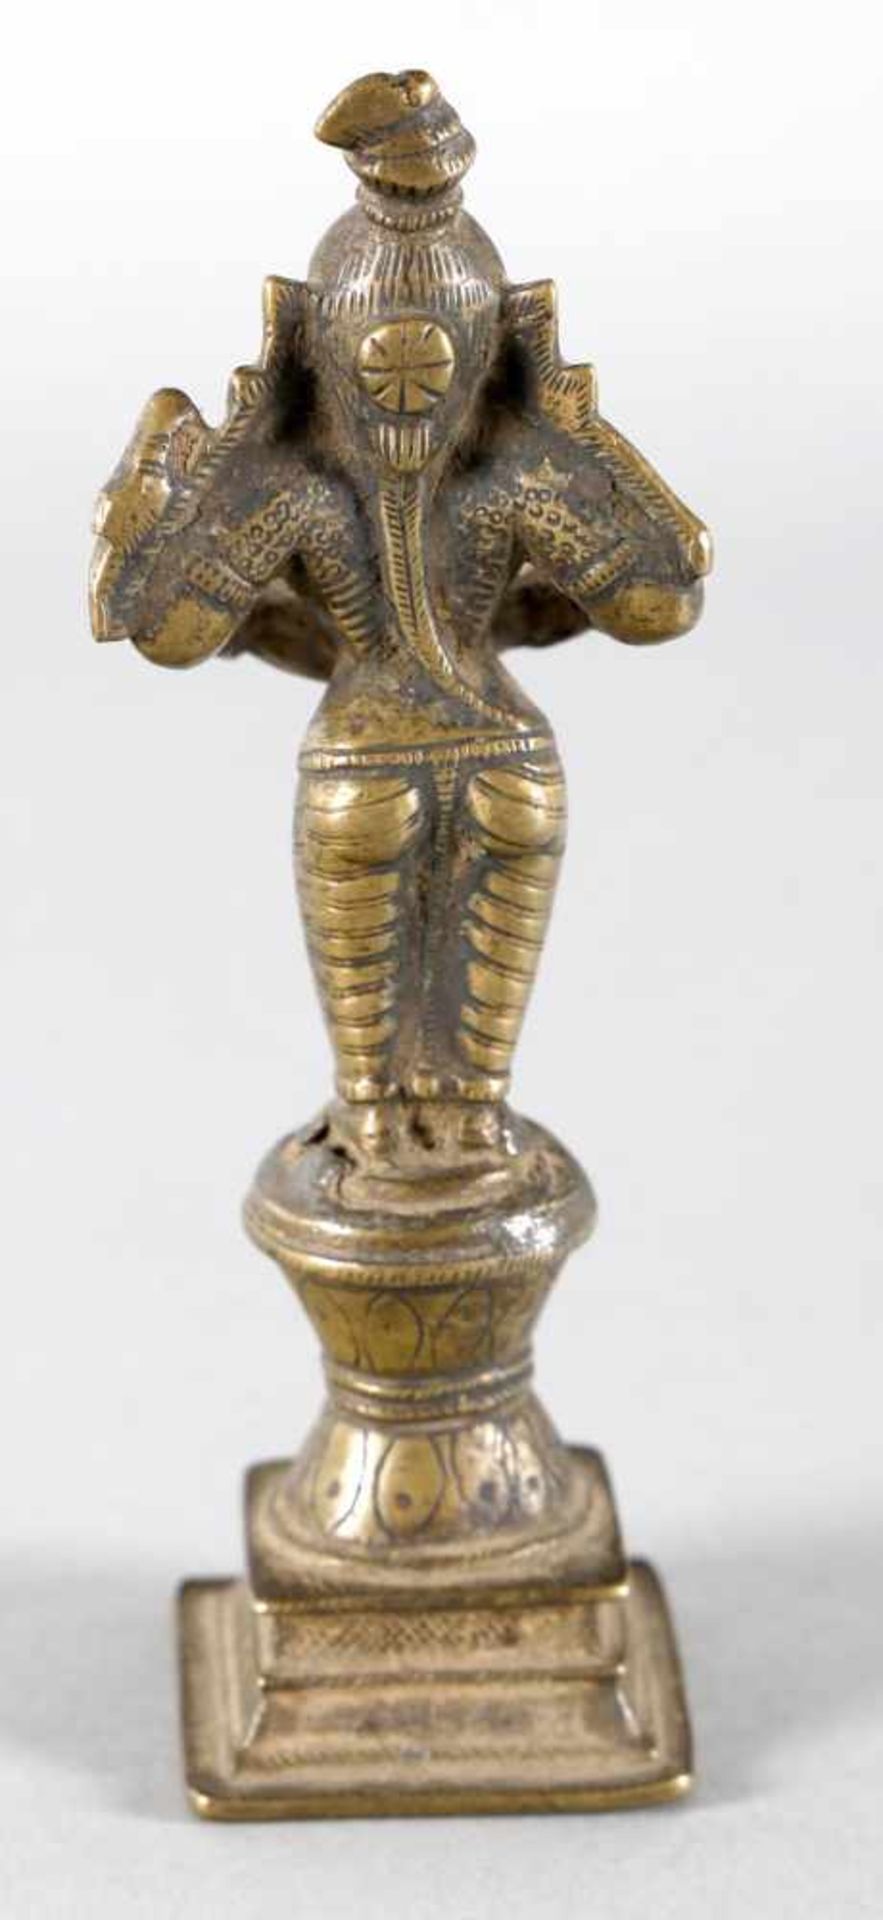 Laksmi-Öllampe aus Bronze, Südostasien, wohl 19./20. Jh.die auf einem mehrstufigen Sockel aufrecht - Bild 2 aus 2